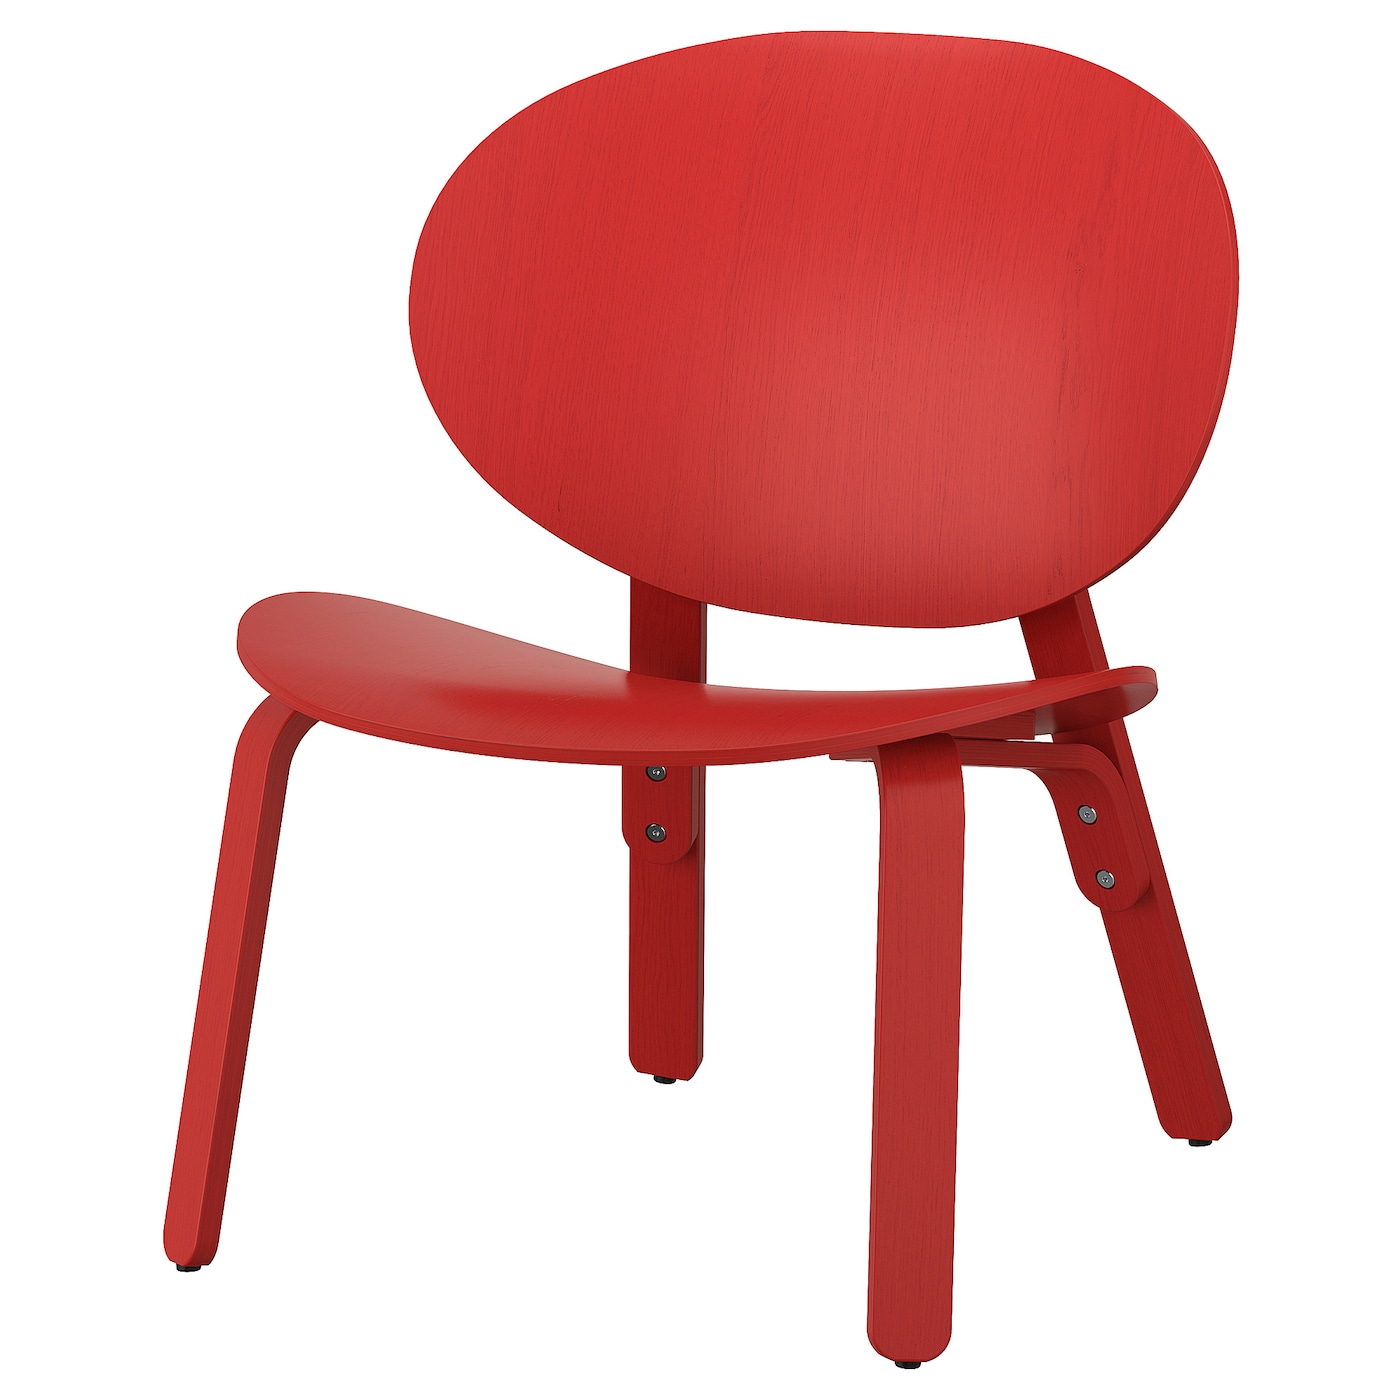 ФРОЗЕТ Кресло, дубовый шпон, крашеный в красную морилку FRÖSET IKEA складное кресло с откидывающейся спинкой сидячее раскладное кресло siesta кресло для зимней рыбалки пляжное кресло для улицы дома